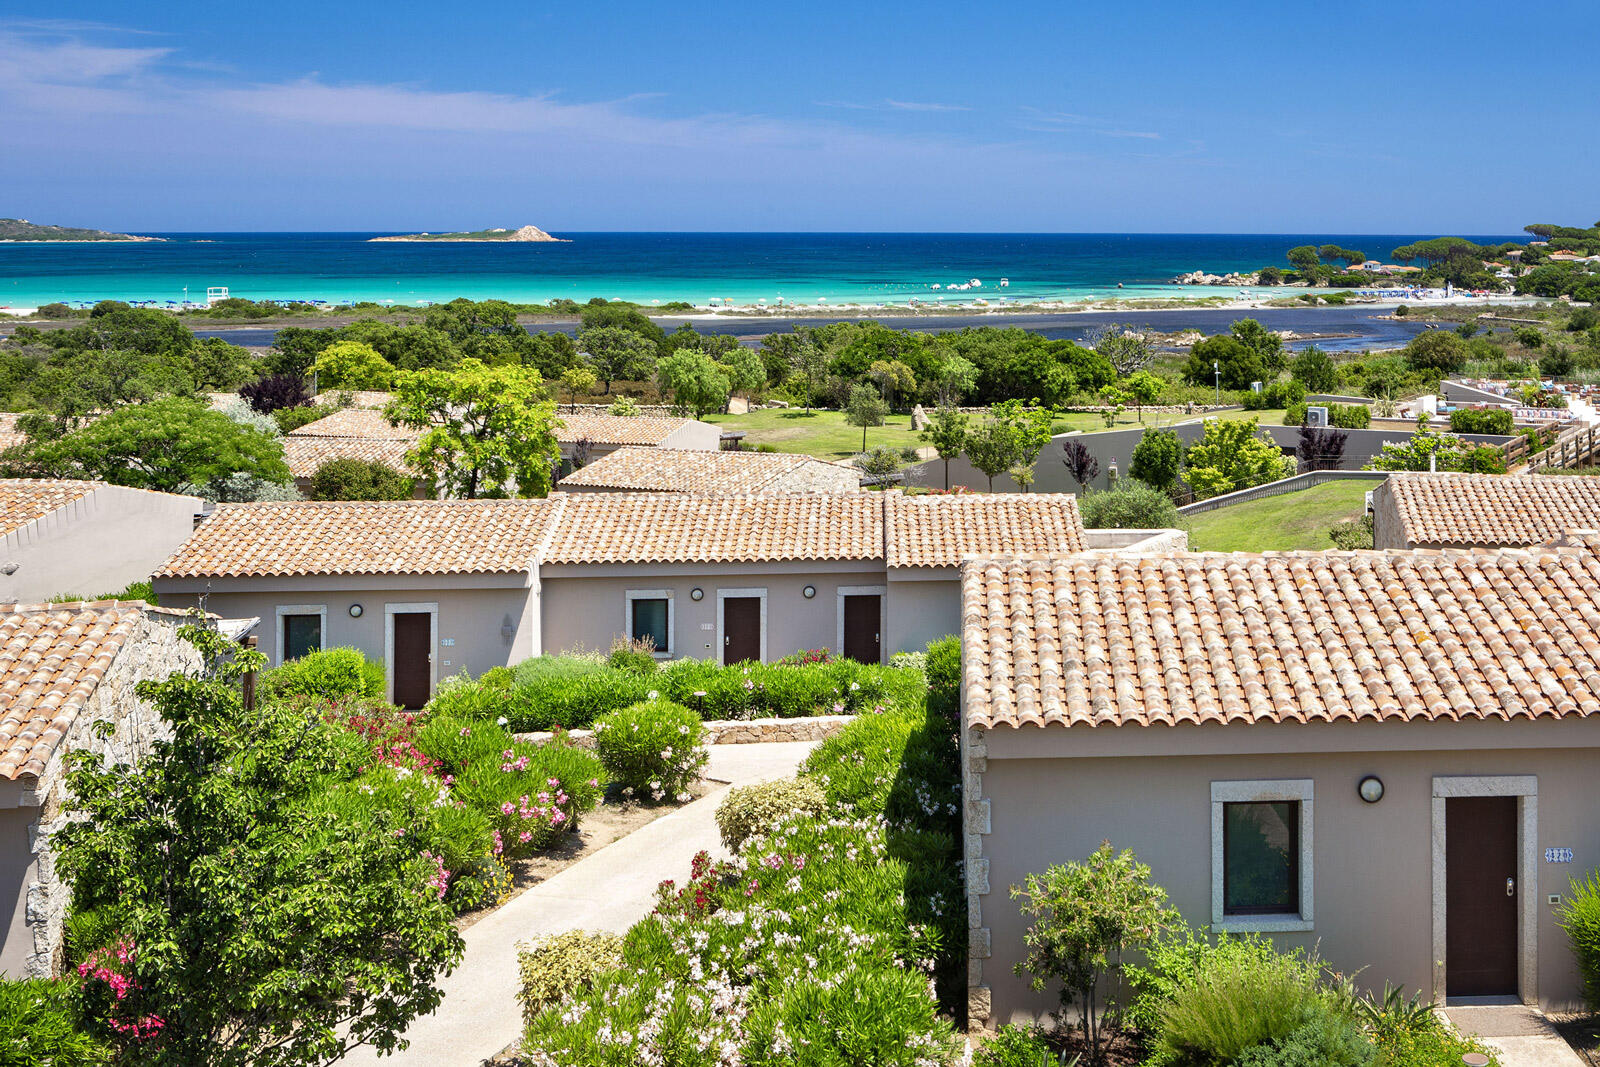 Kleine Villas zwischen grünen Büschen direkt am Strand im Baglioni Resort Sardinia